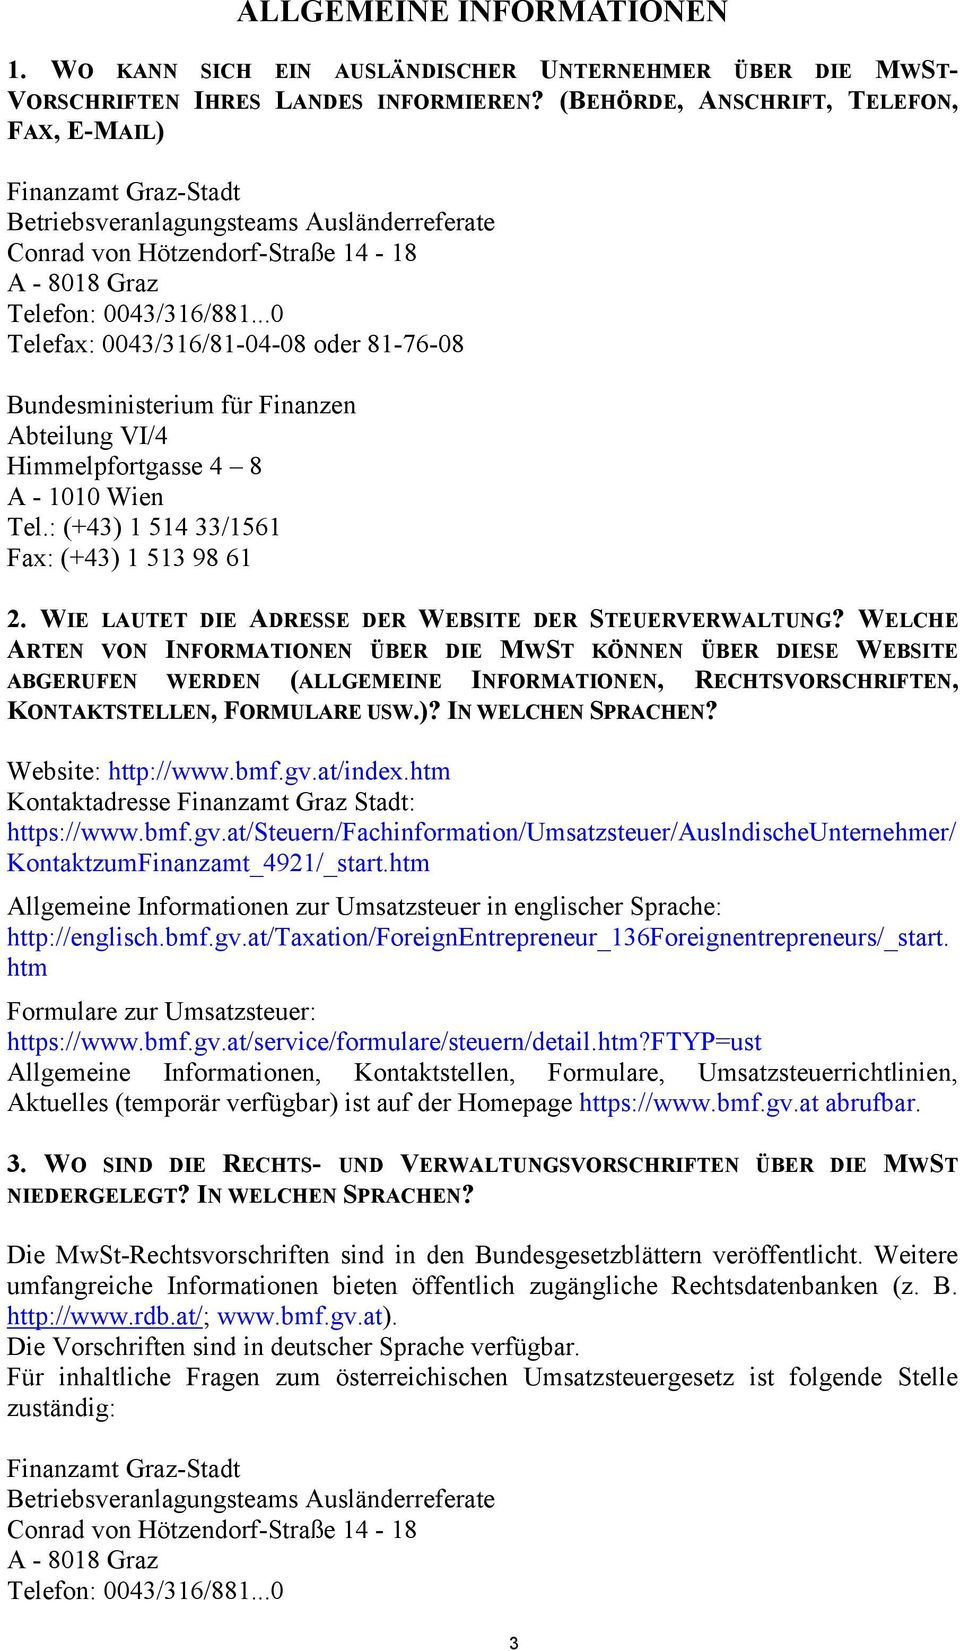 ..0 Telefax: 0043/316/81-04-08 oder 81-76-08 Bundesministerium für Finanzen Abteilung VI/4 Himmelpfortgasse 4 8 A - 1010 Wien Tel.: (+43) 1 514 33/1561 Fax: (+43) 1 513 98 61 2.